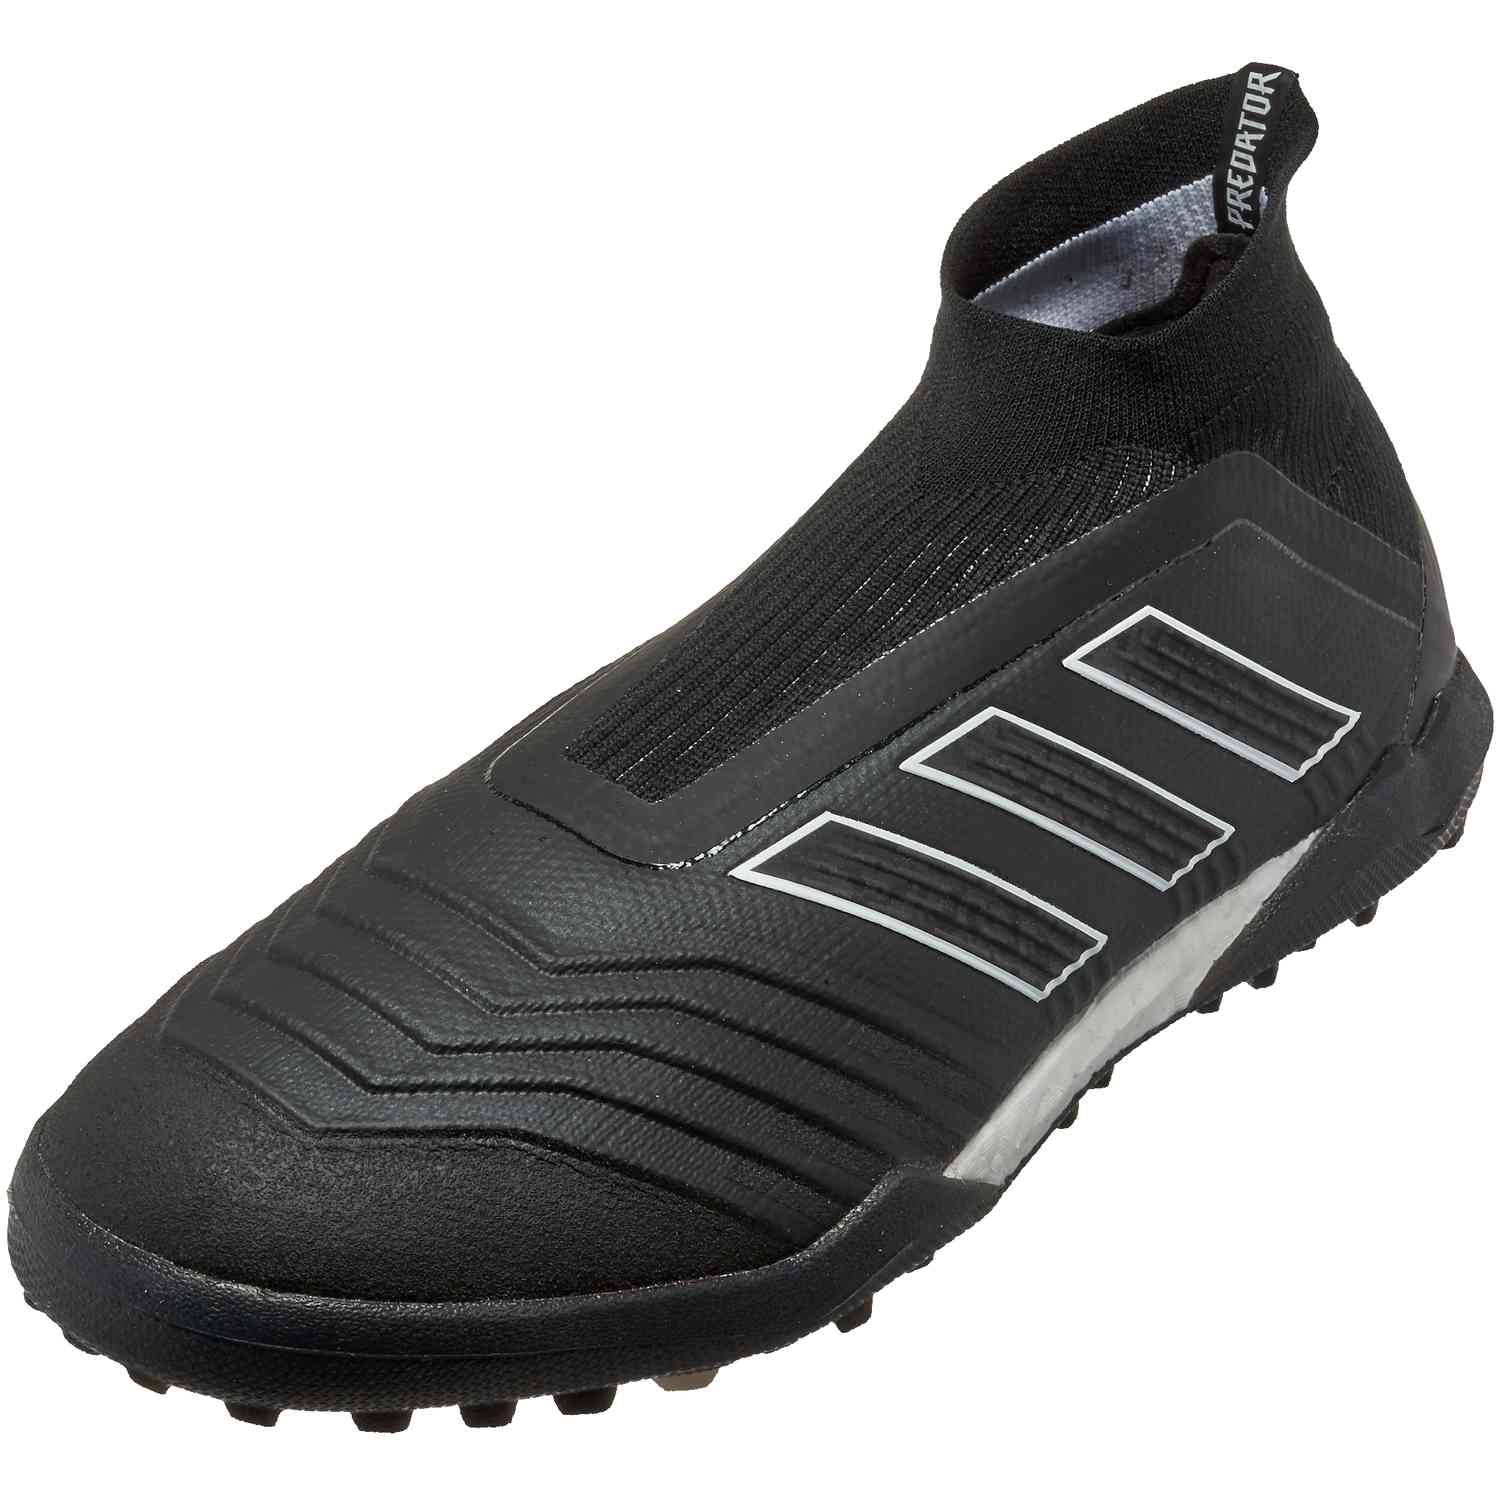 adidas predator turf soccer shoes